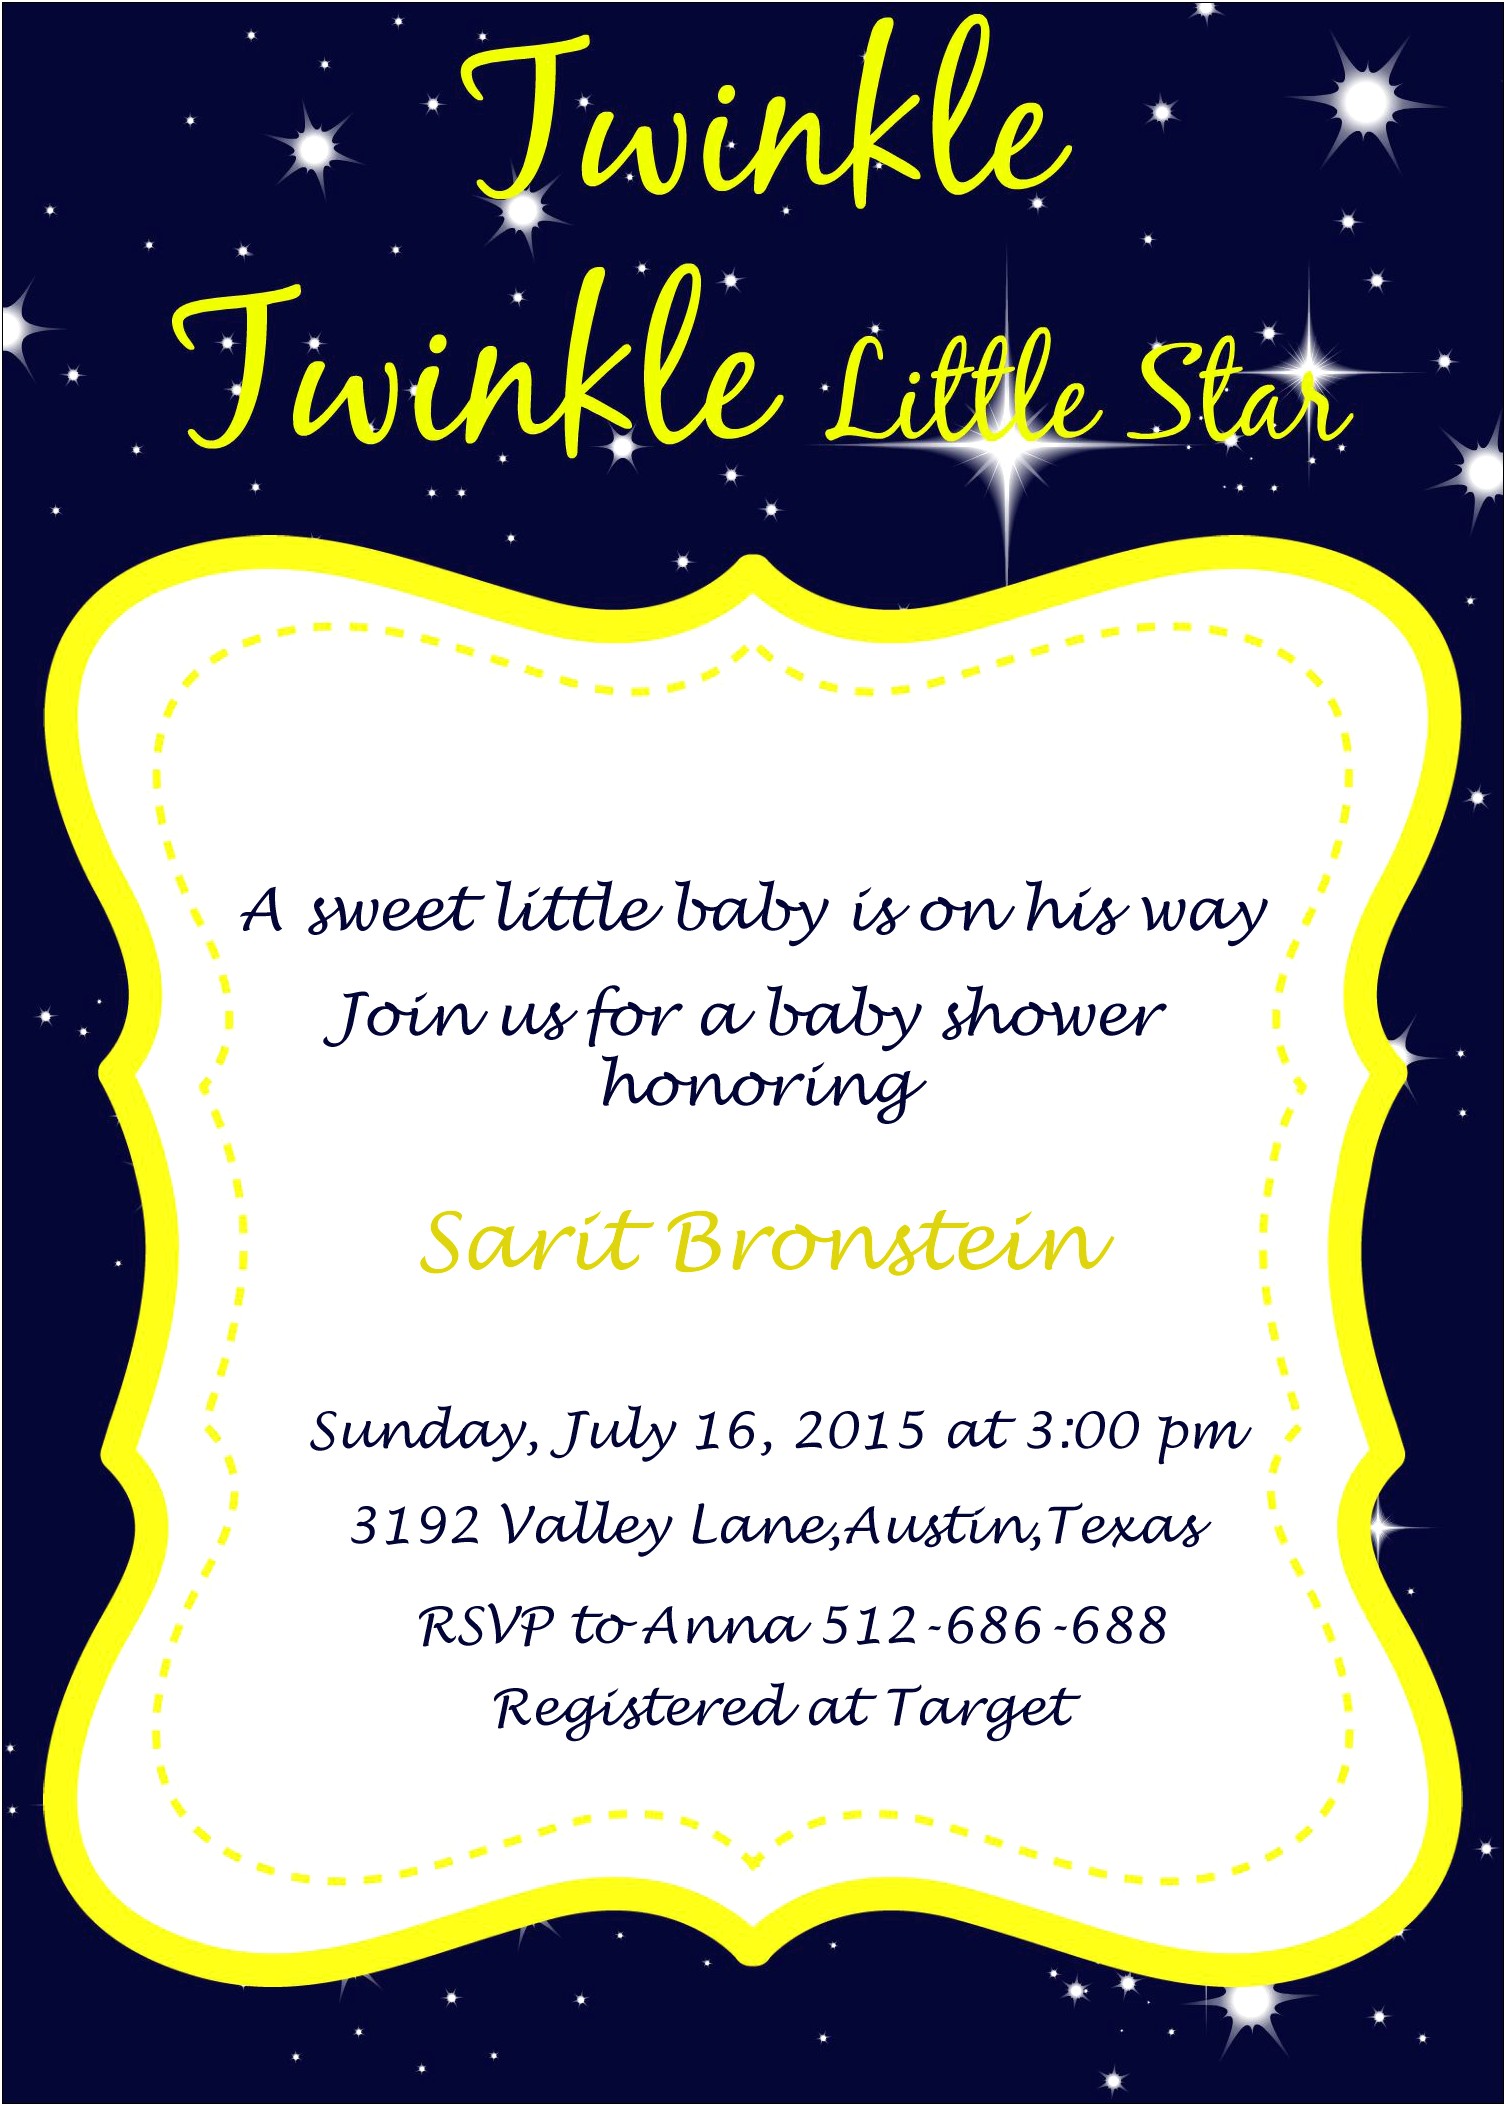 Twinkle Twinkle Little Star Invitation Free Template